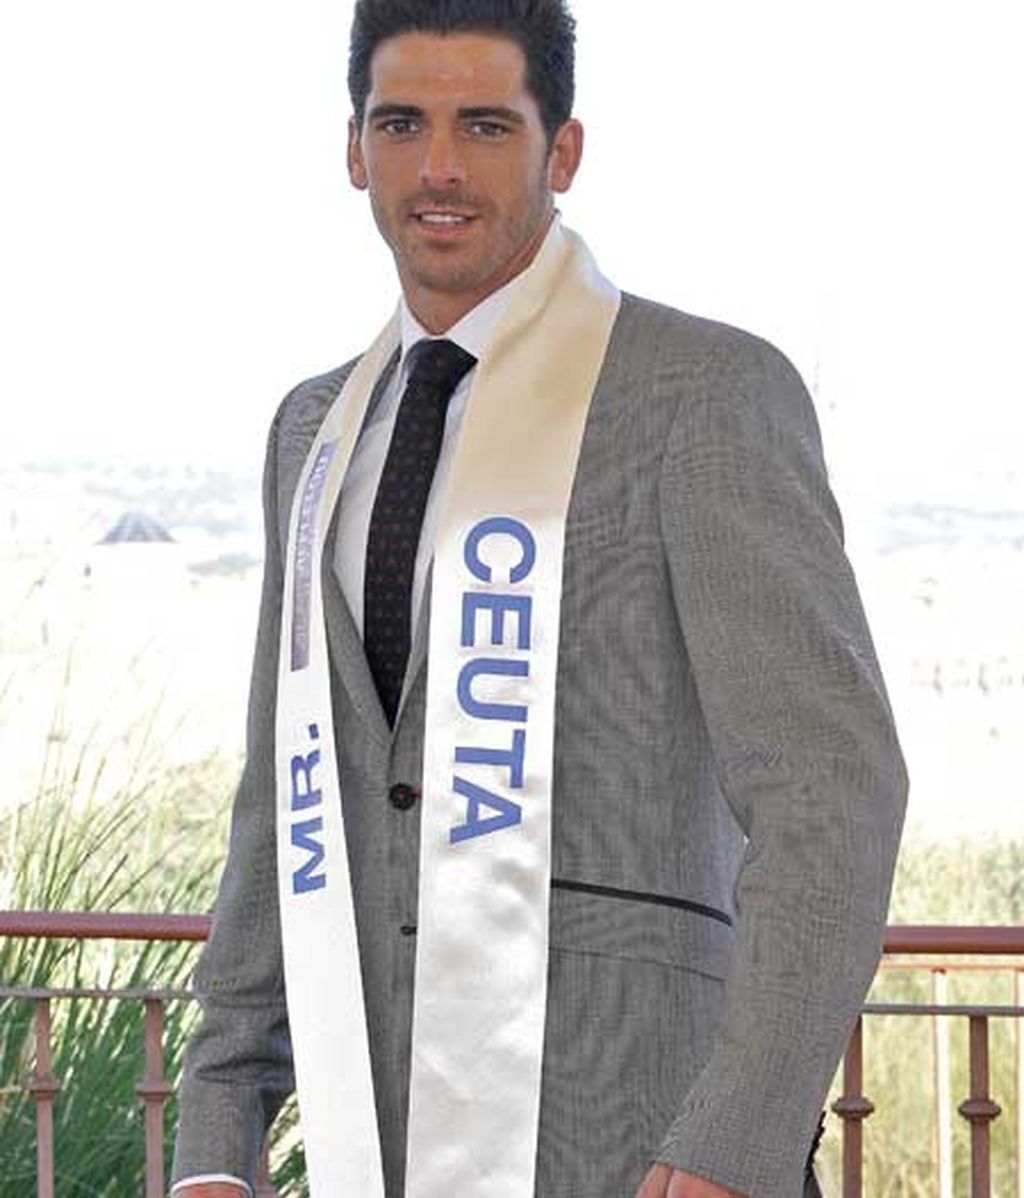 Mister España 2010